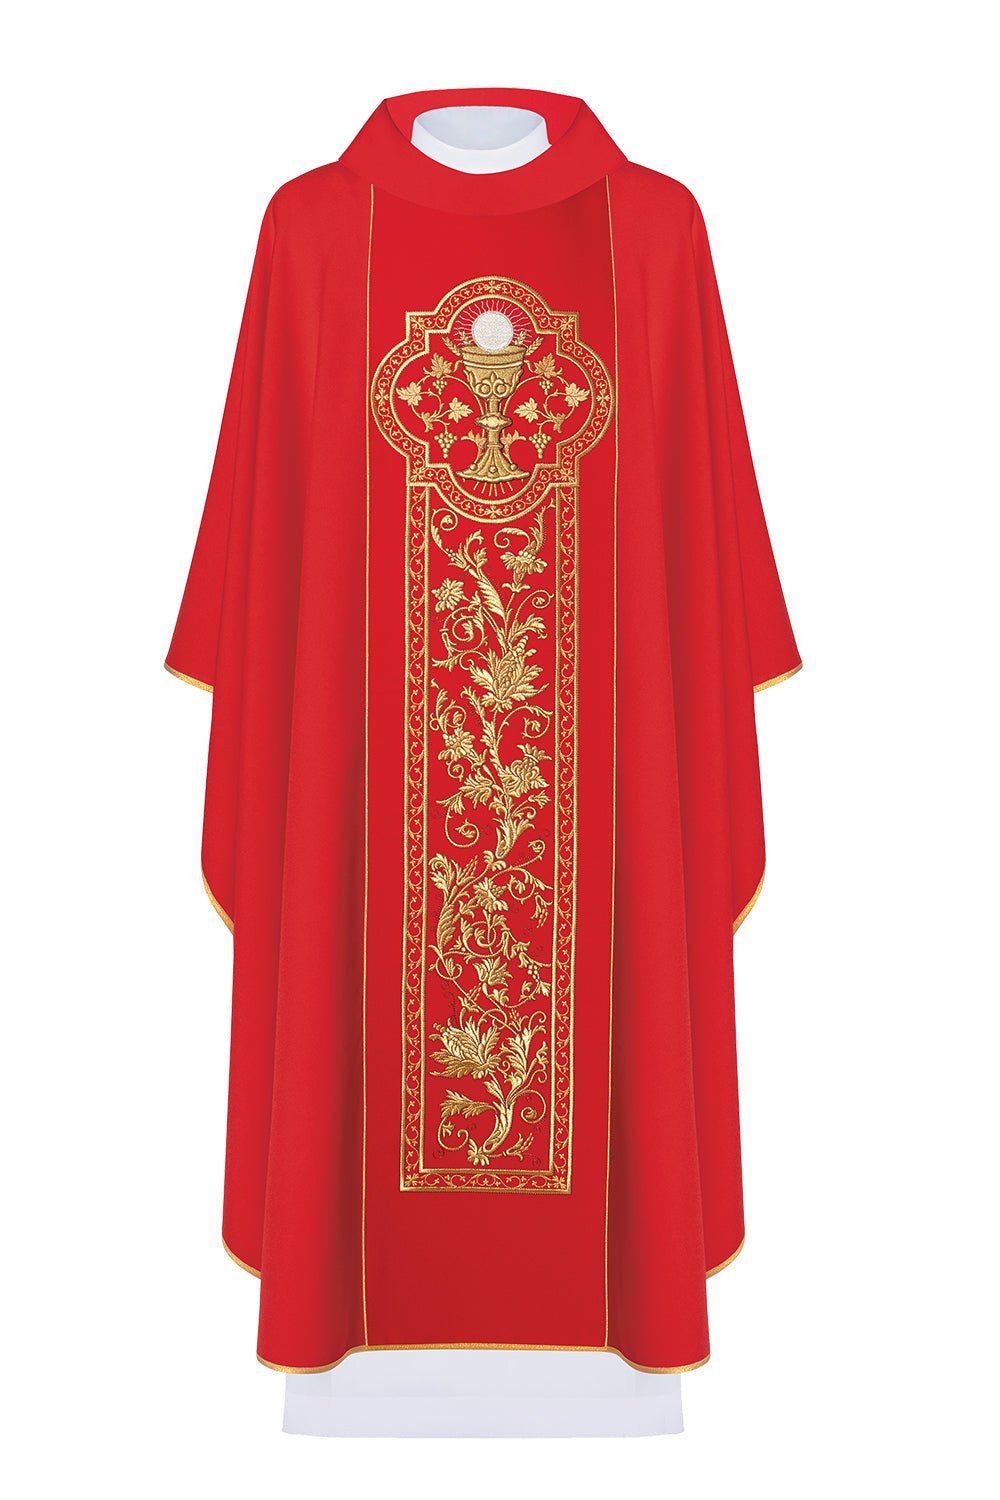 Czerwony ornat z symbolem kielicha eucharystycznego